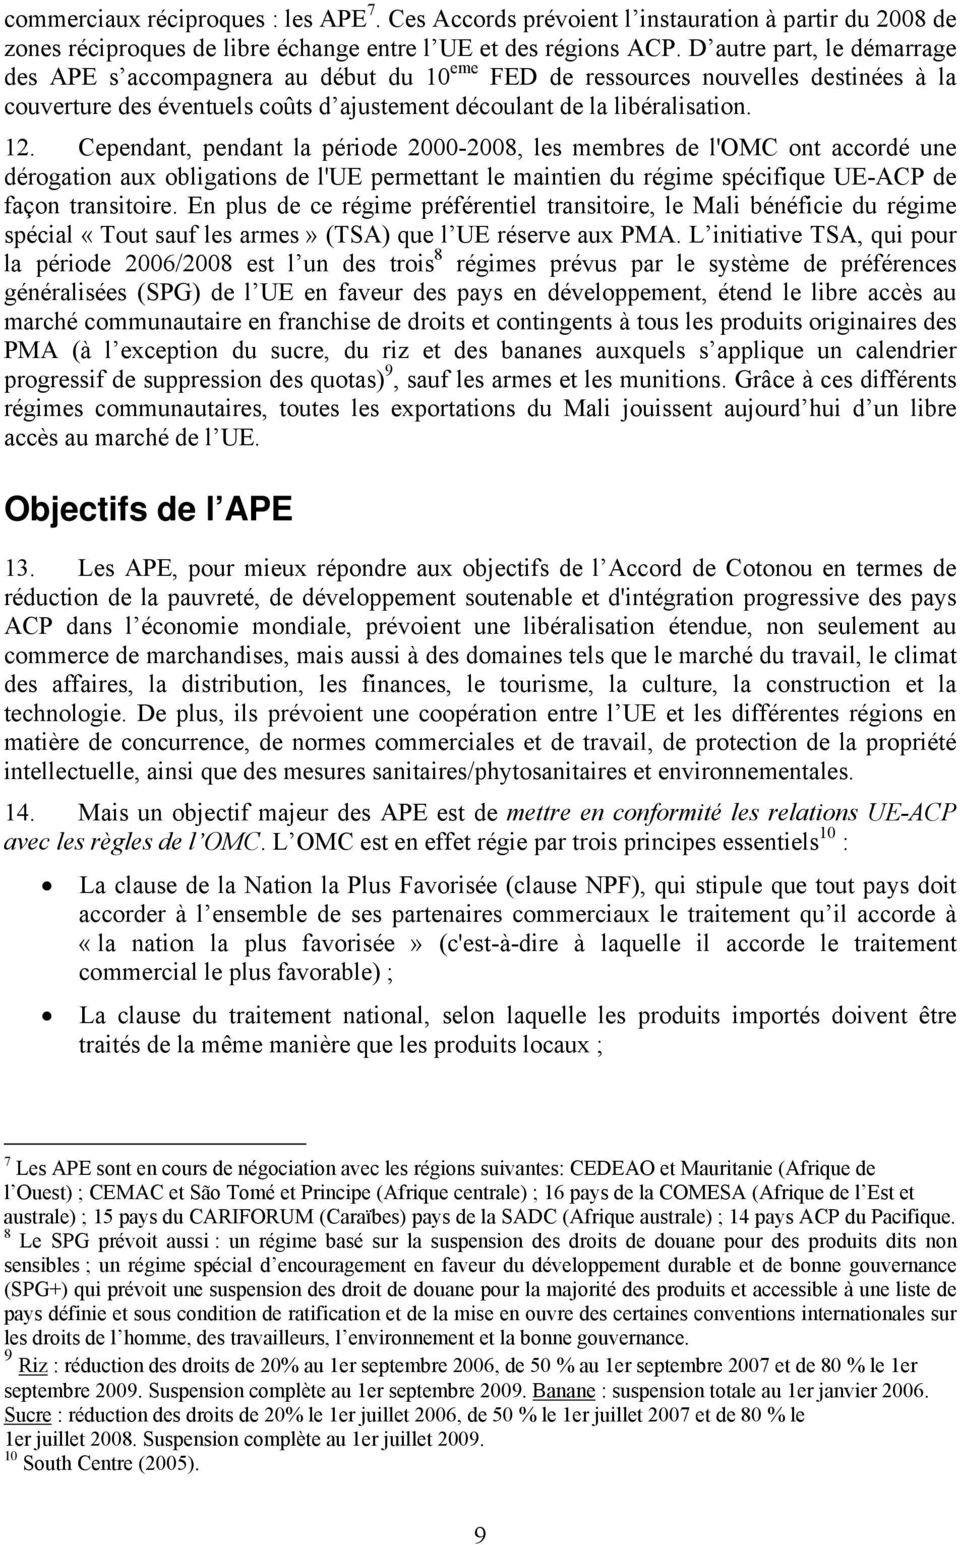 Cependant, pendant la période 2000-2008, les membres de l'omc ont accordé une dérogation aux obligations de l'ue permettant le maintien du régime spécifique UE-ACP de façon transitoire.